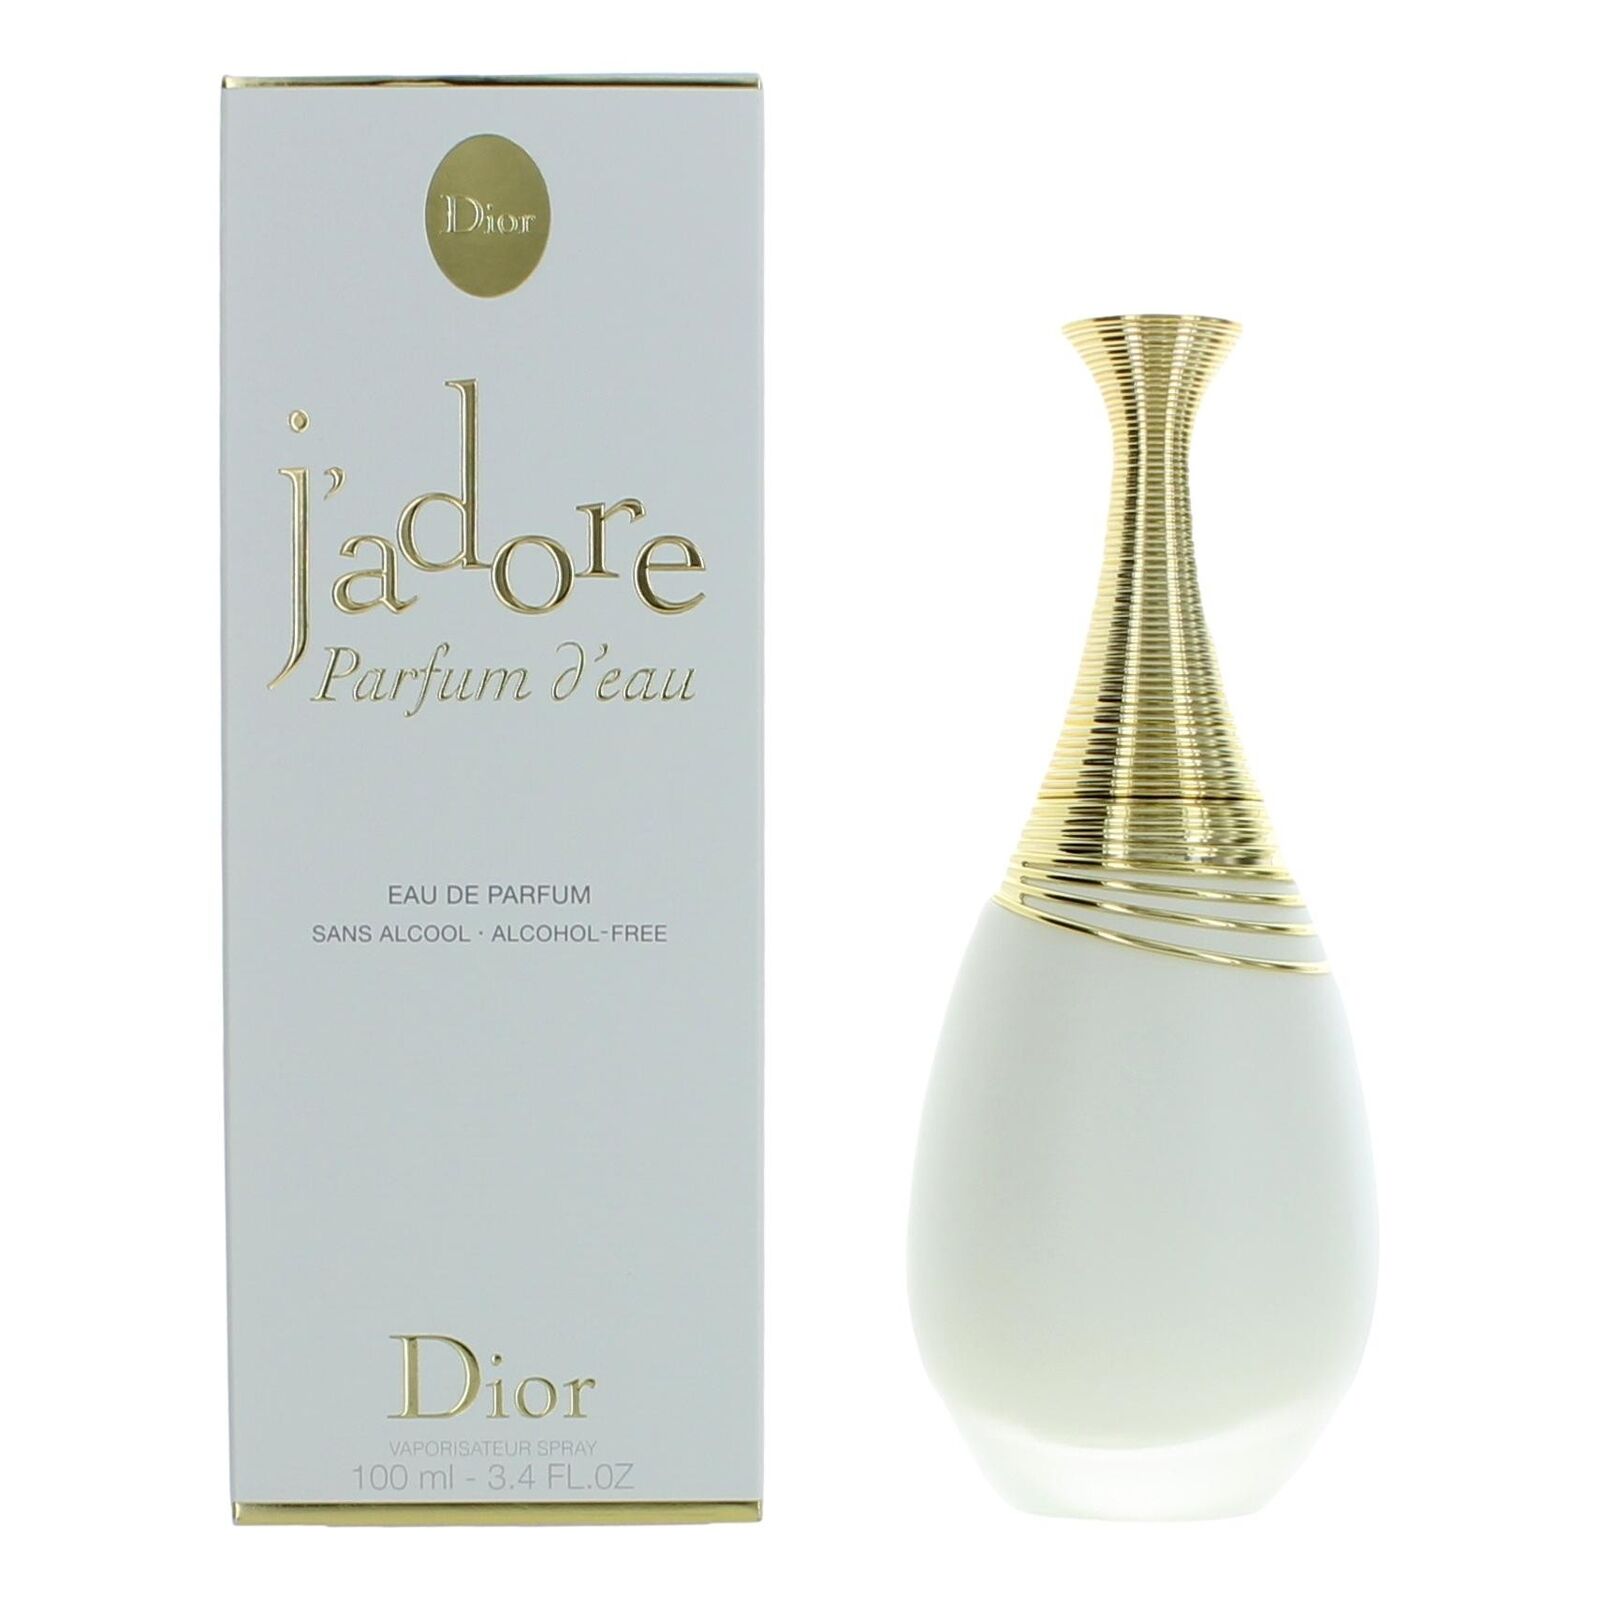 J'Adore Parfum D'Eau - Christian Dior - 100 ml - edp